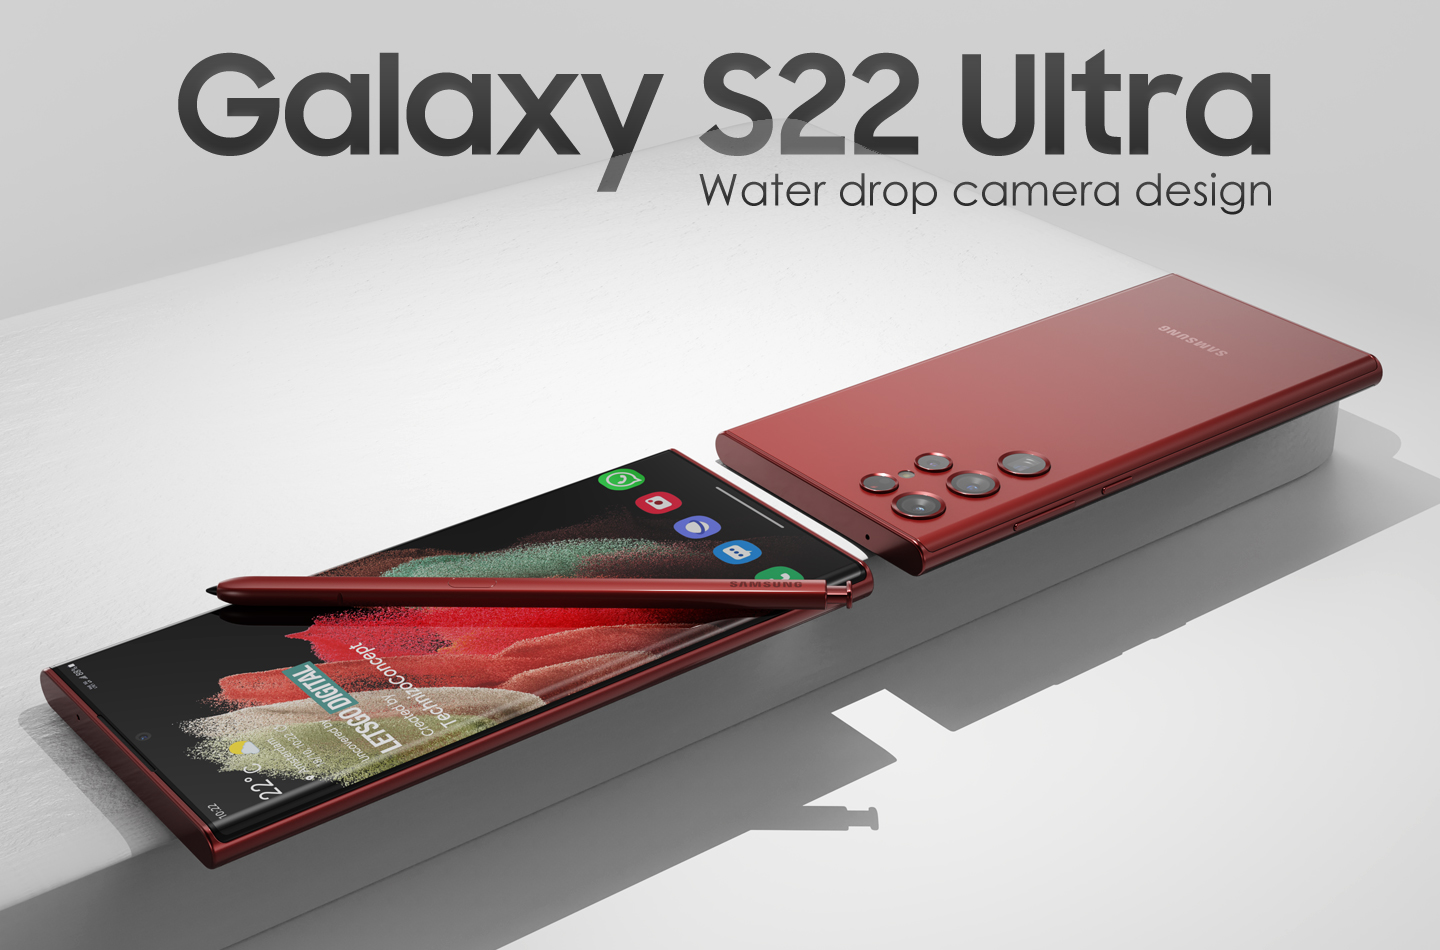 Zdjęcia finalnej wersji flagowego Samsunga Galaxy S22 Ultra pojawiły się w sieci